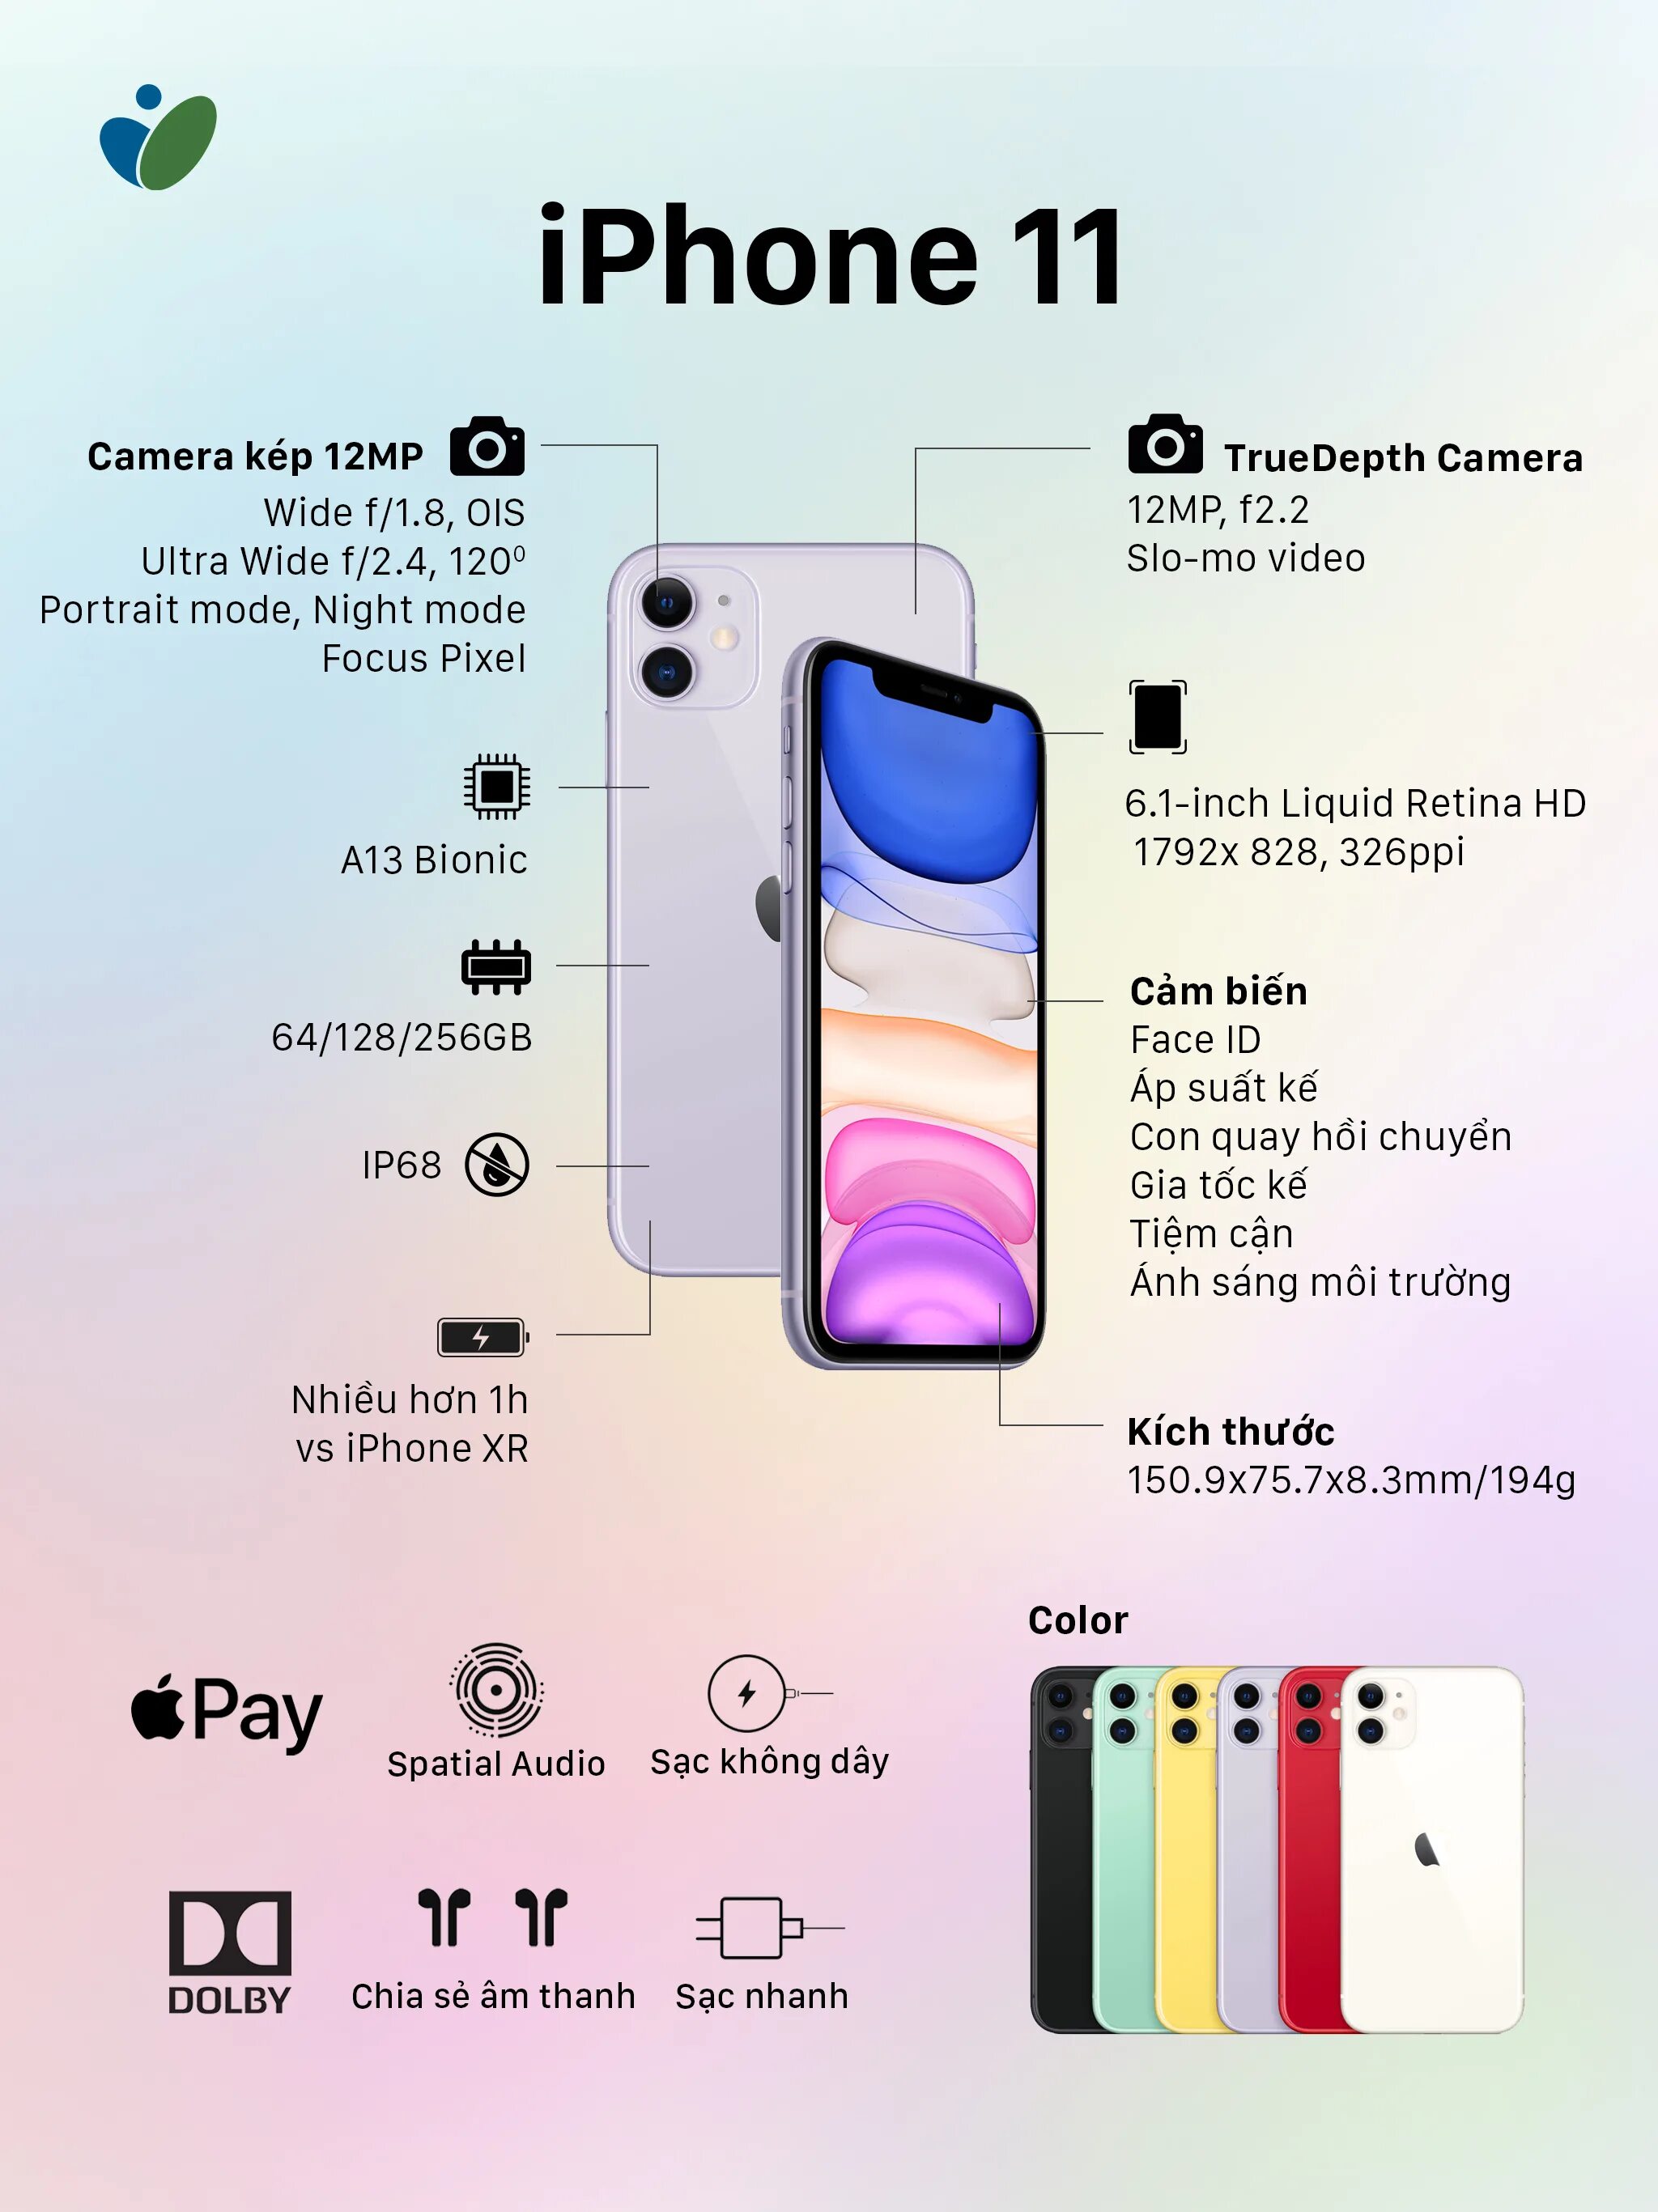 12 про сколько батарея. Айфон 11 Pro Max камера мегапикселей. Айфон 11 про Макс камера МП. Iphone 11 камера мегапикселей. Айфон 11 характеристики камеры.